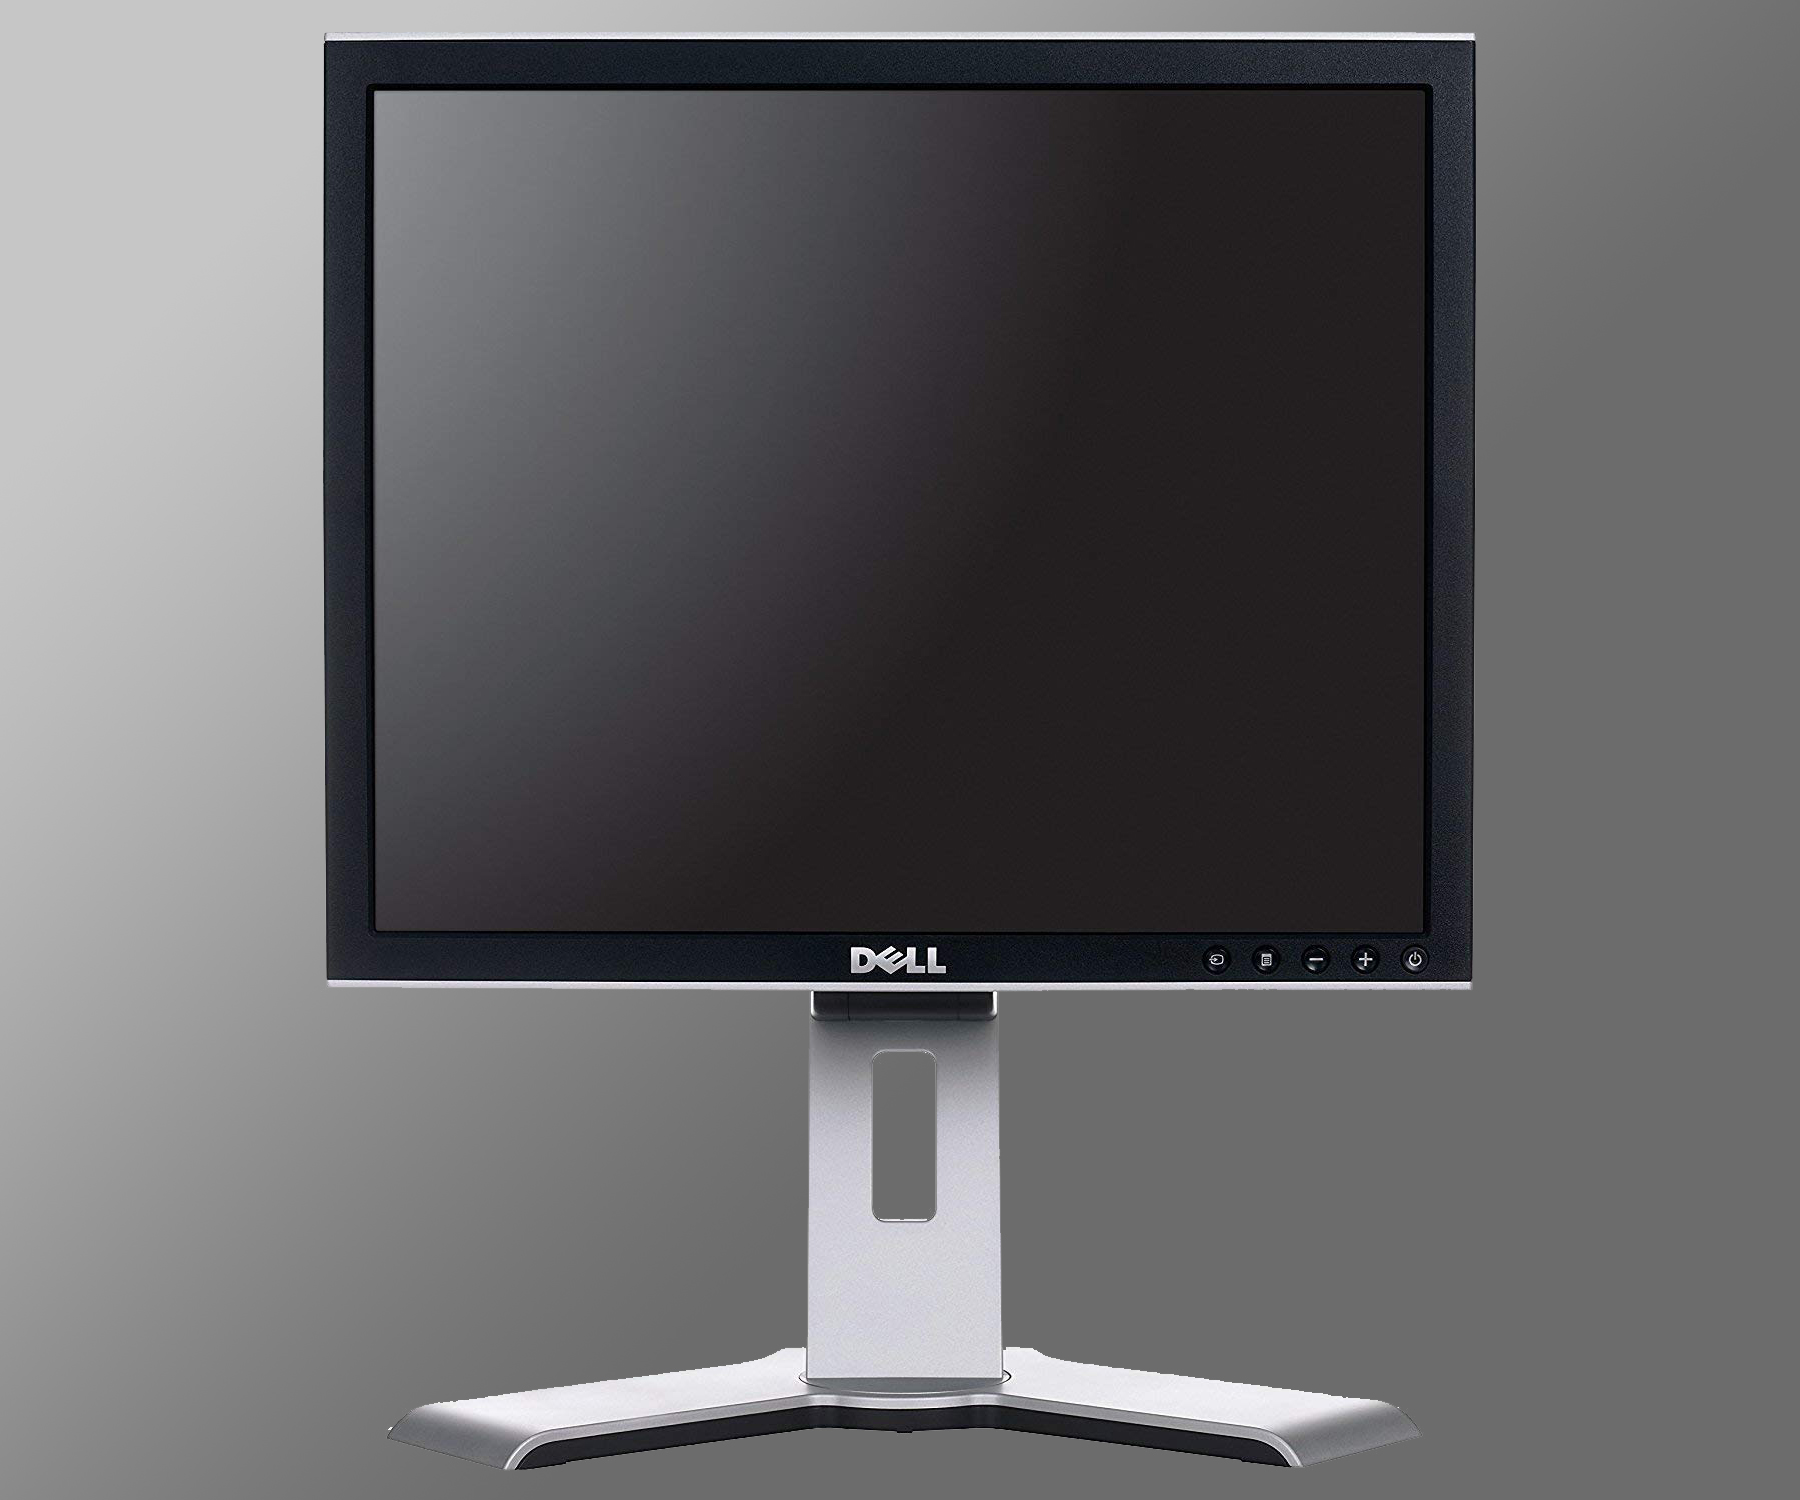 DELL E1707fpb 17″ monitor